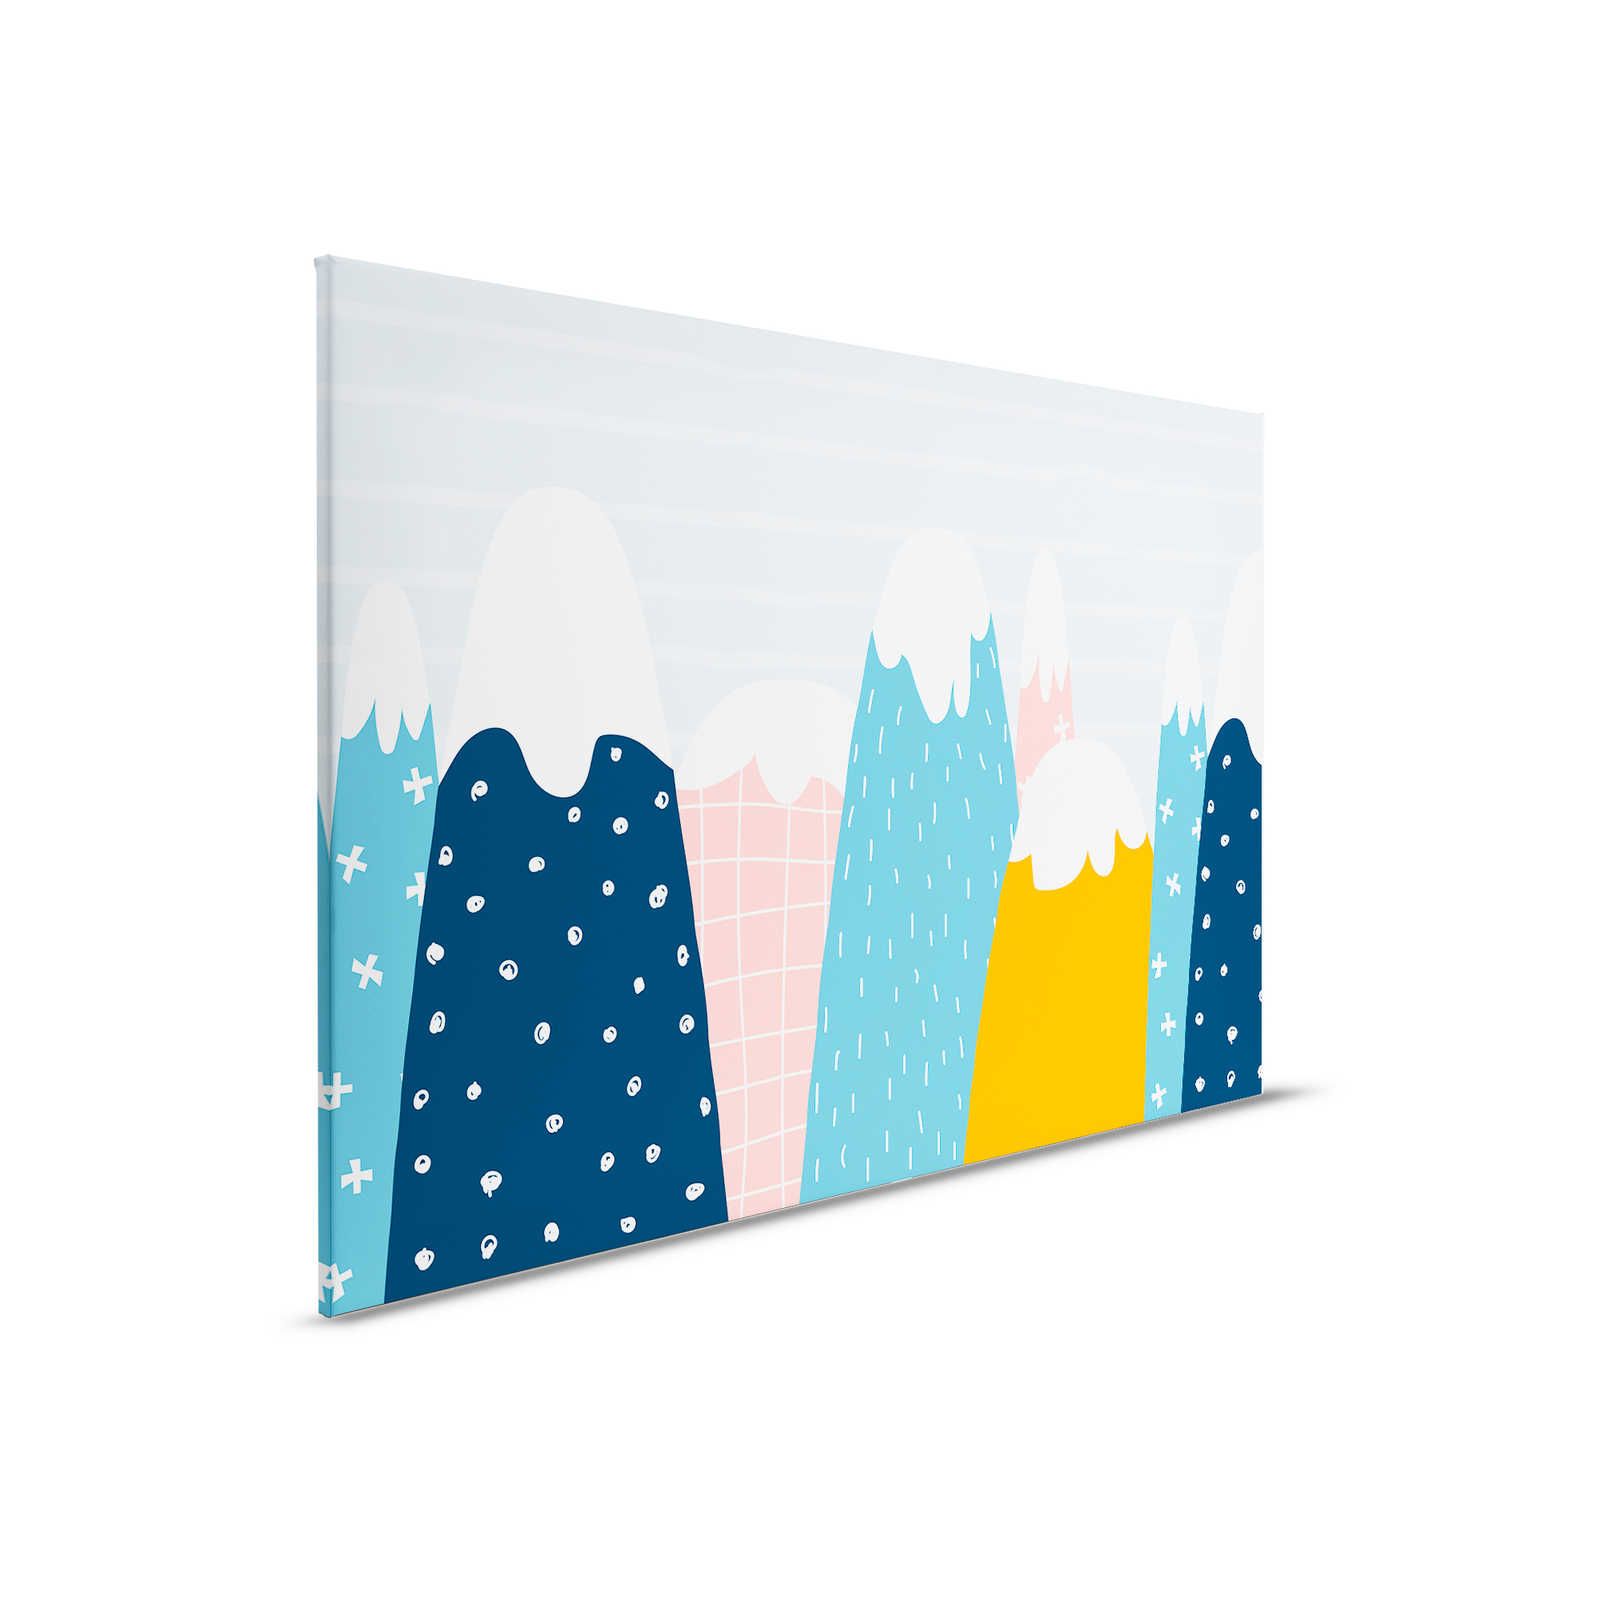 Leinwand mit verschneiten Hügeln im gemalten Stil – 90 cm x 60 cm
